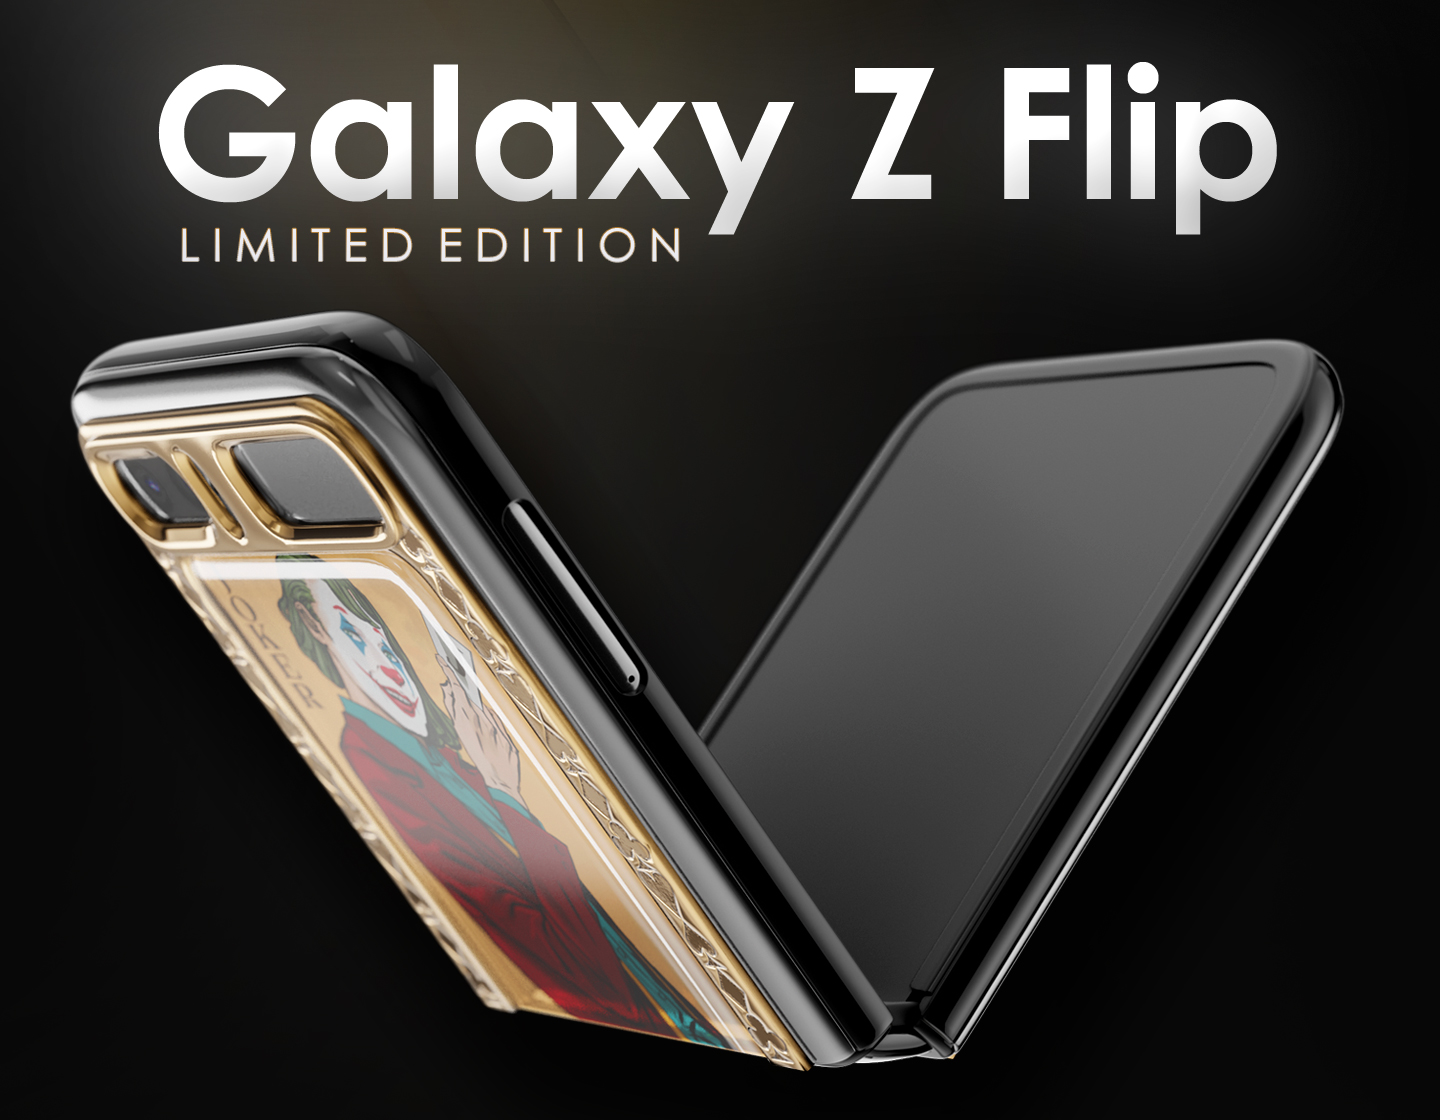 Galaxy Z Flip limited edition